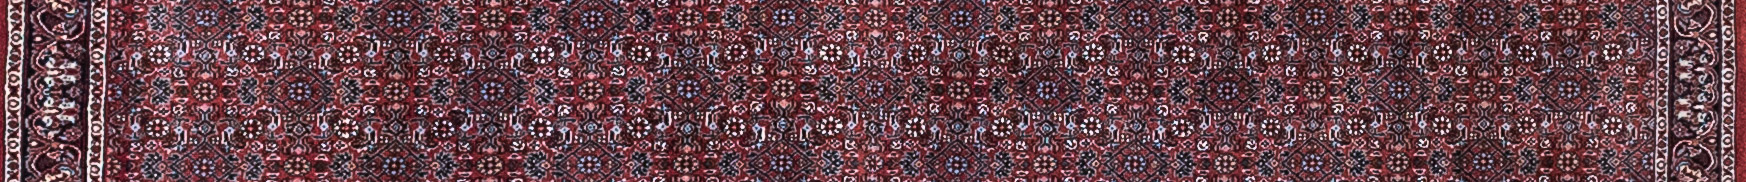 Bidjar Persian Carpet Rug N1Carpet Canada Montreal Tapis Persan 990